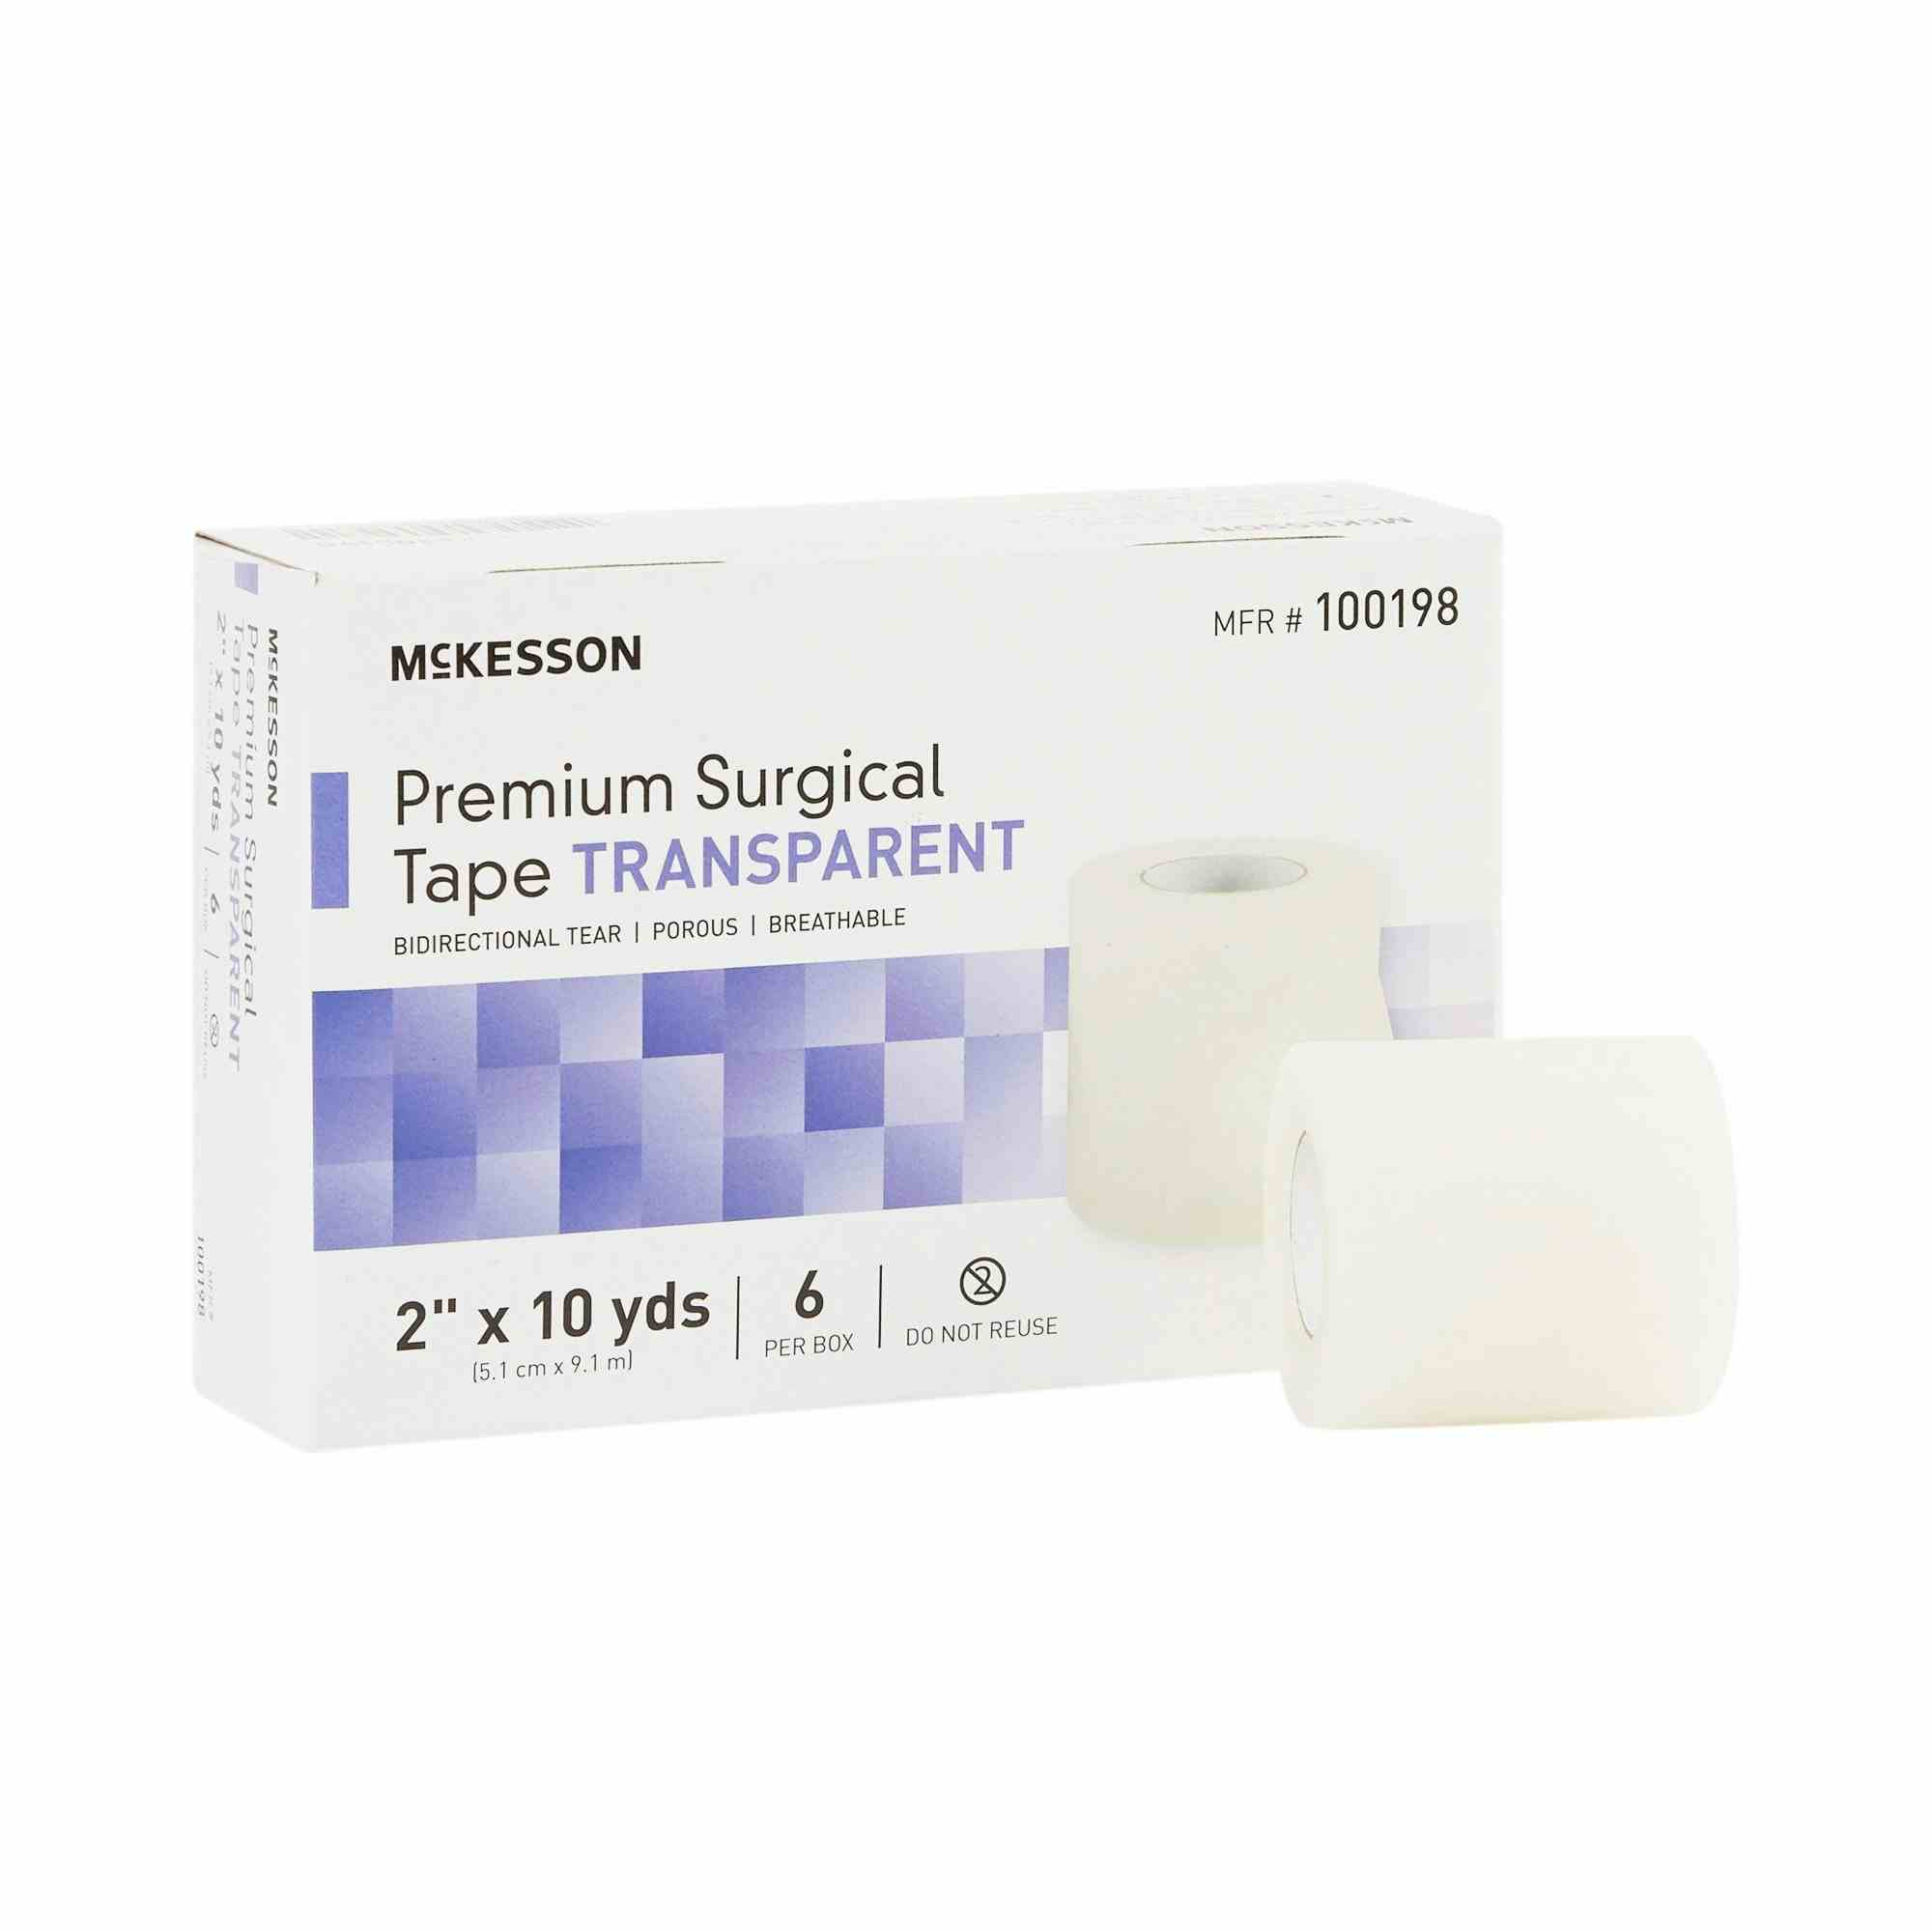 McKesson Transparent Premium Surgical Tape, 2" X 10 yds, 100198, Box of 6